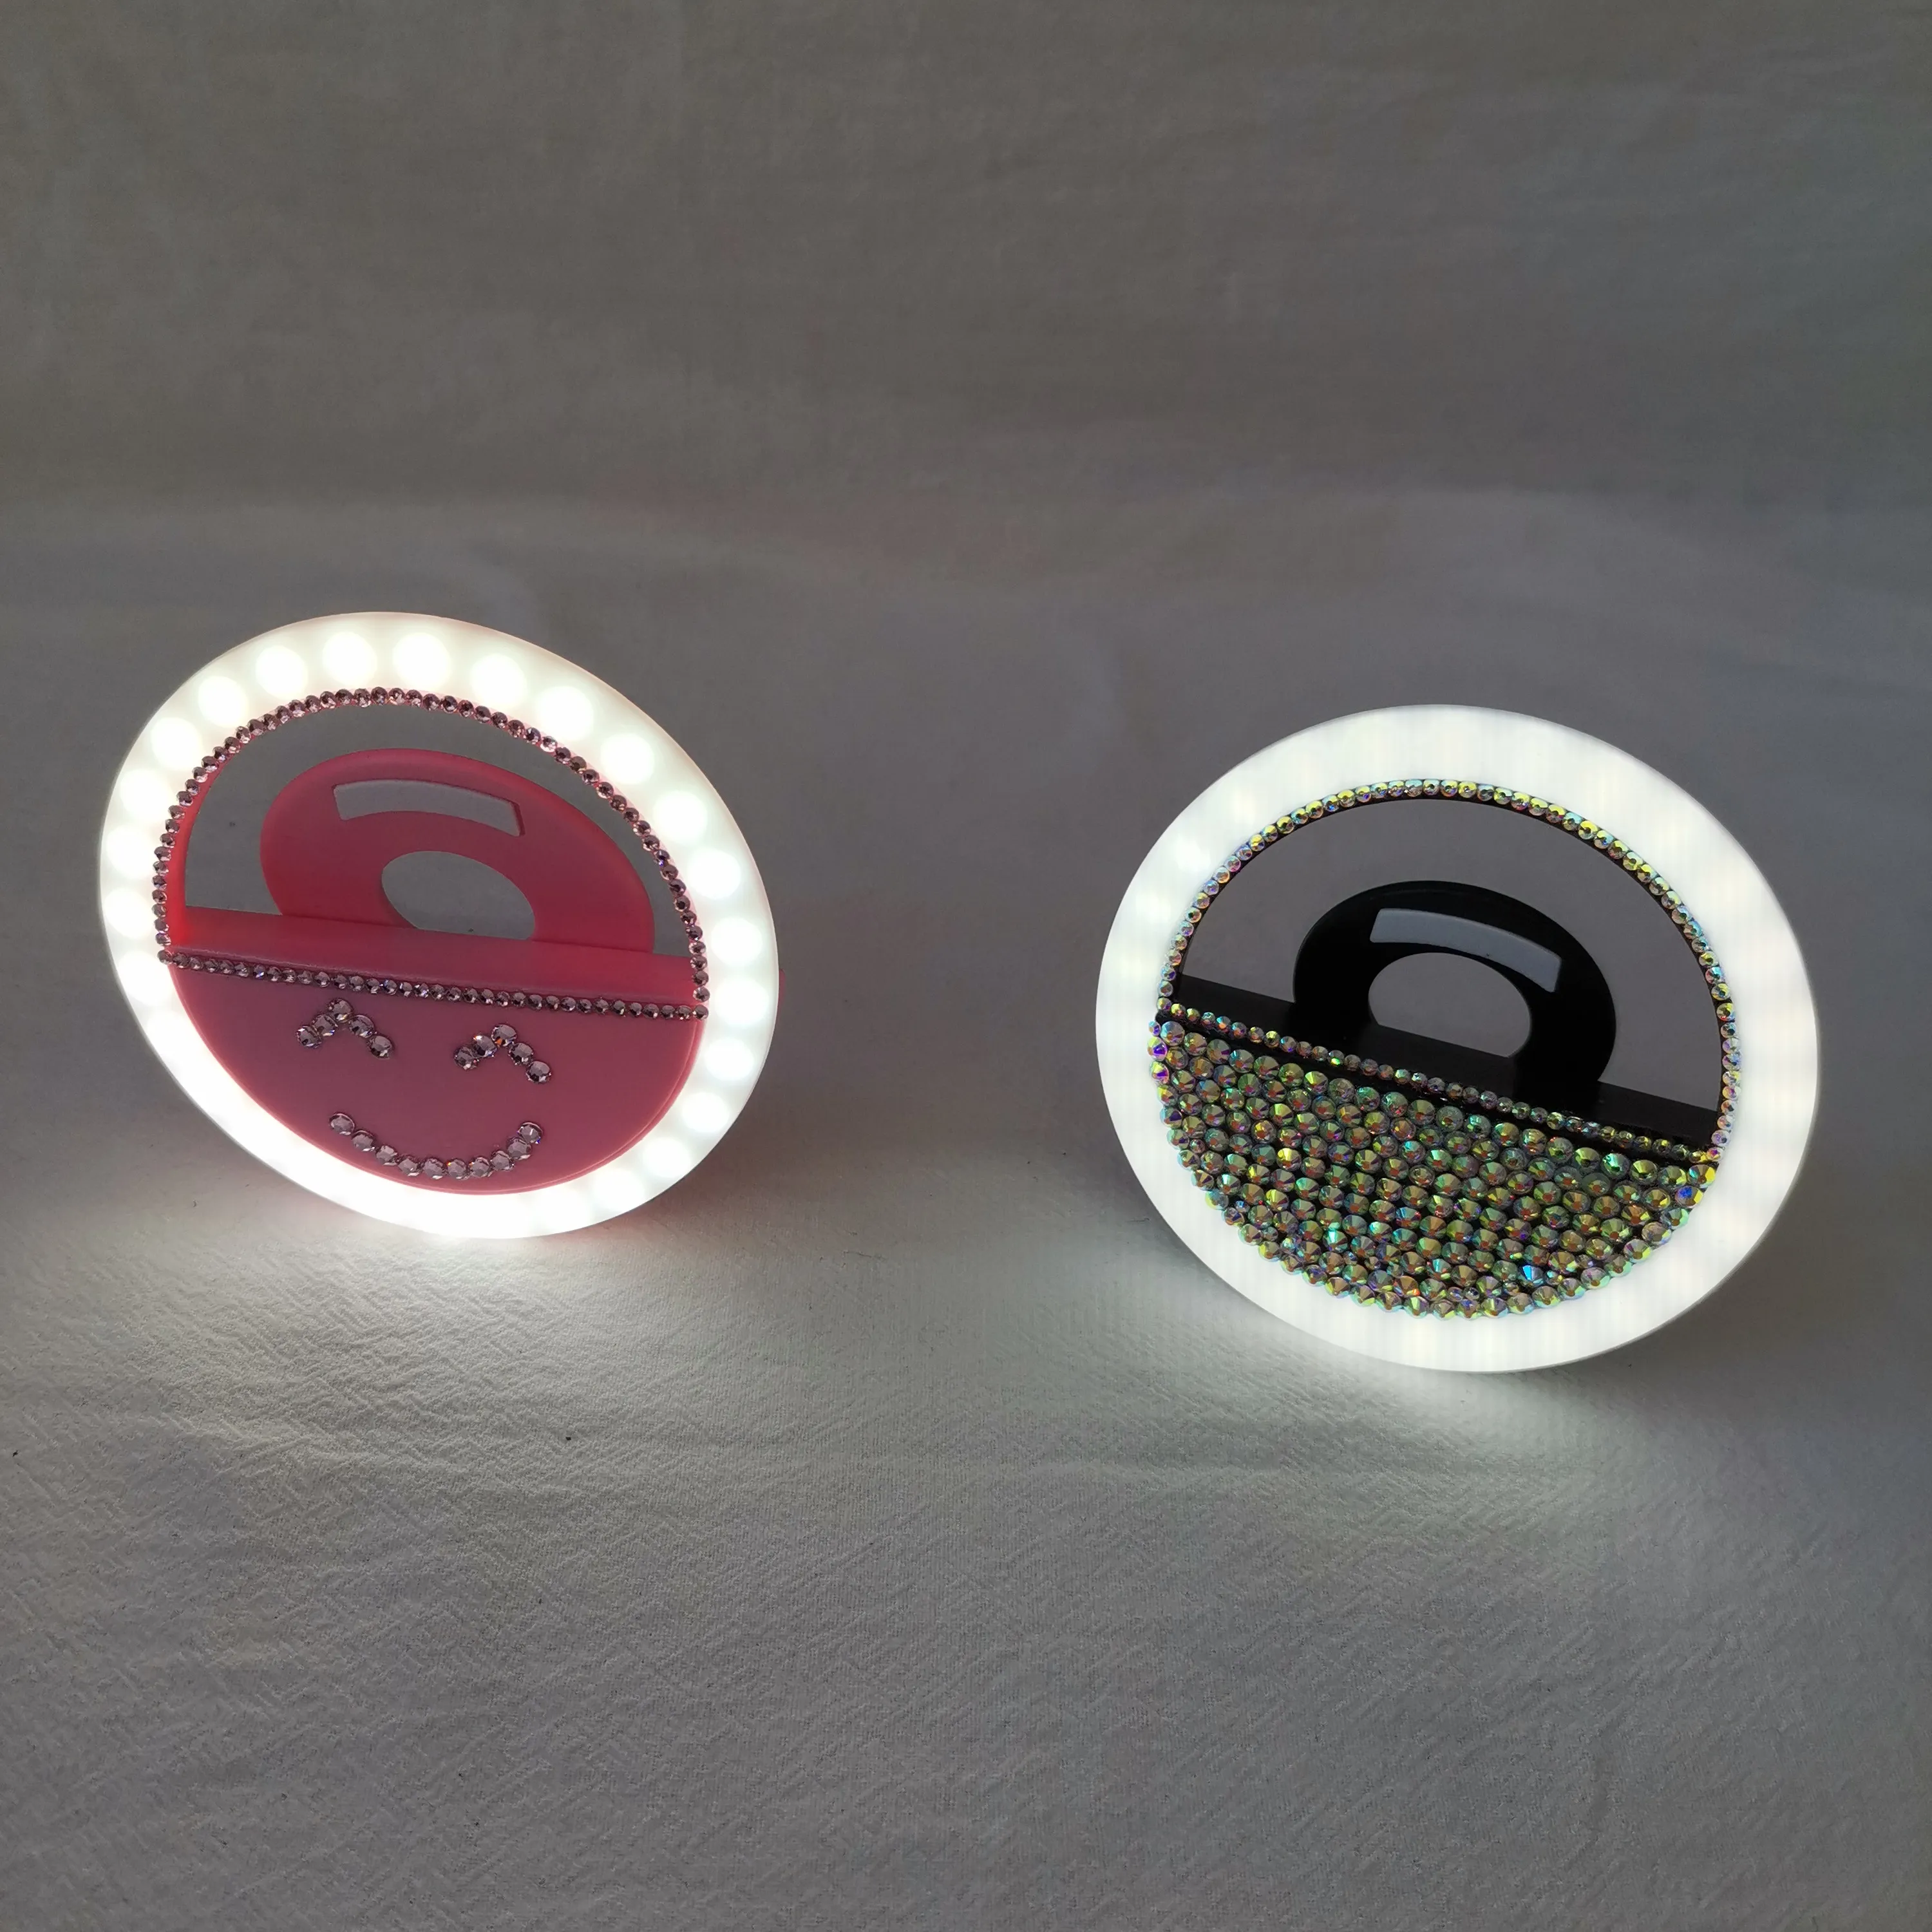 블링 재고 충전식 LED 링 채우기 조명 휴대 전화 메이크업 사진 빛 셀카 led 링 라이트 라이브 스트림